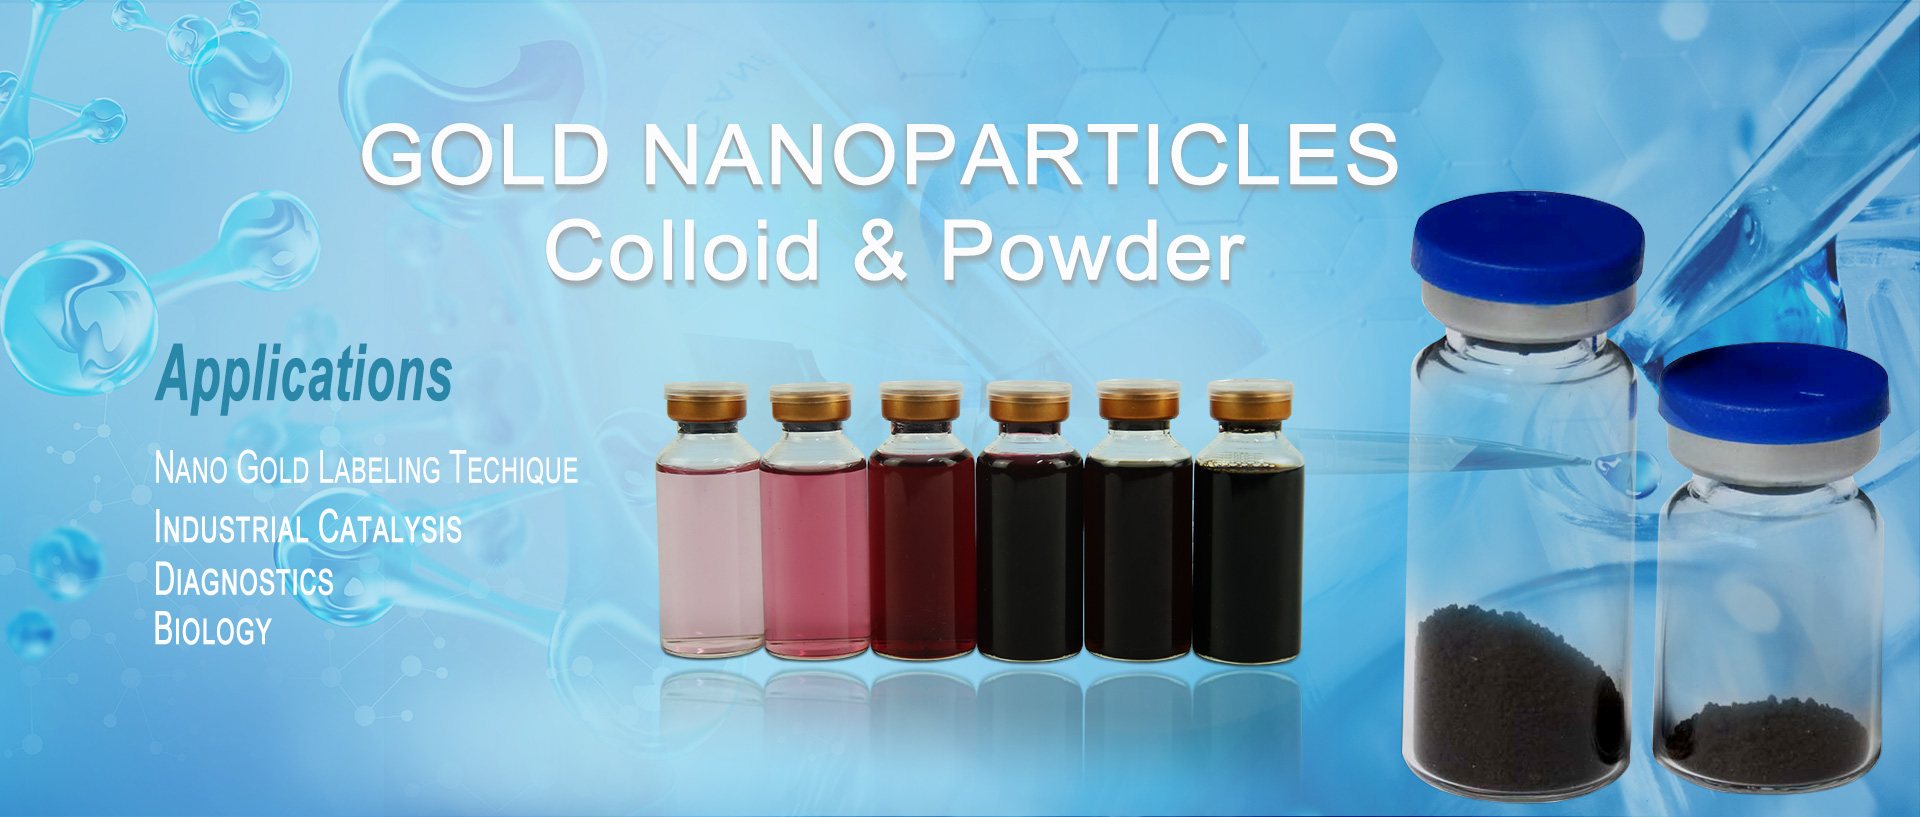 የወርቅ nanoparticles